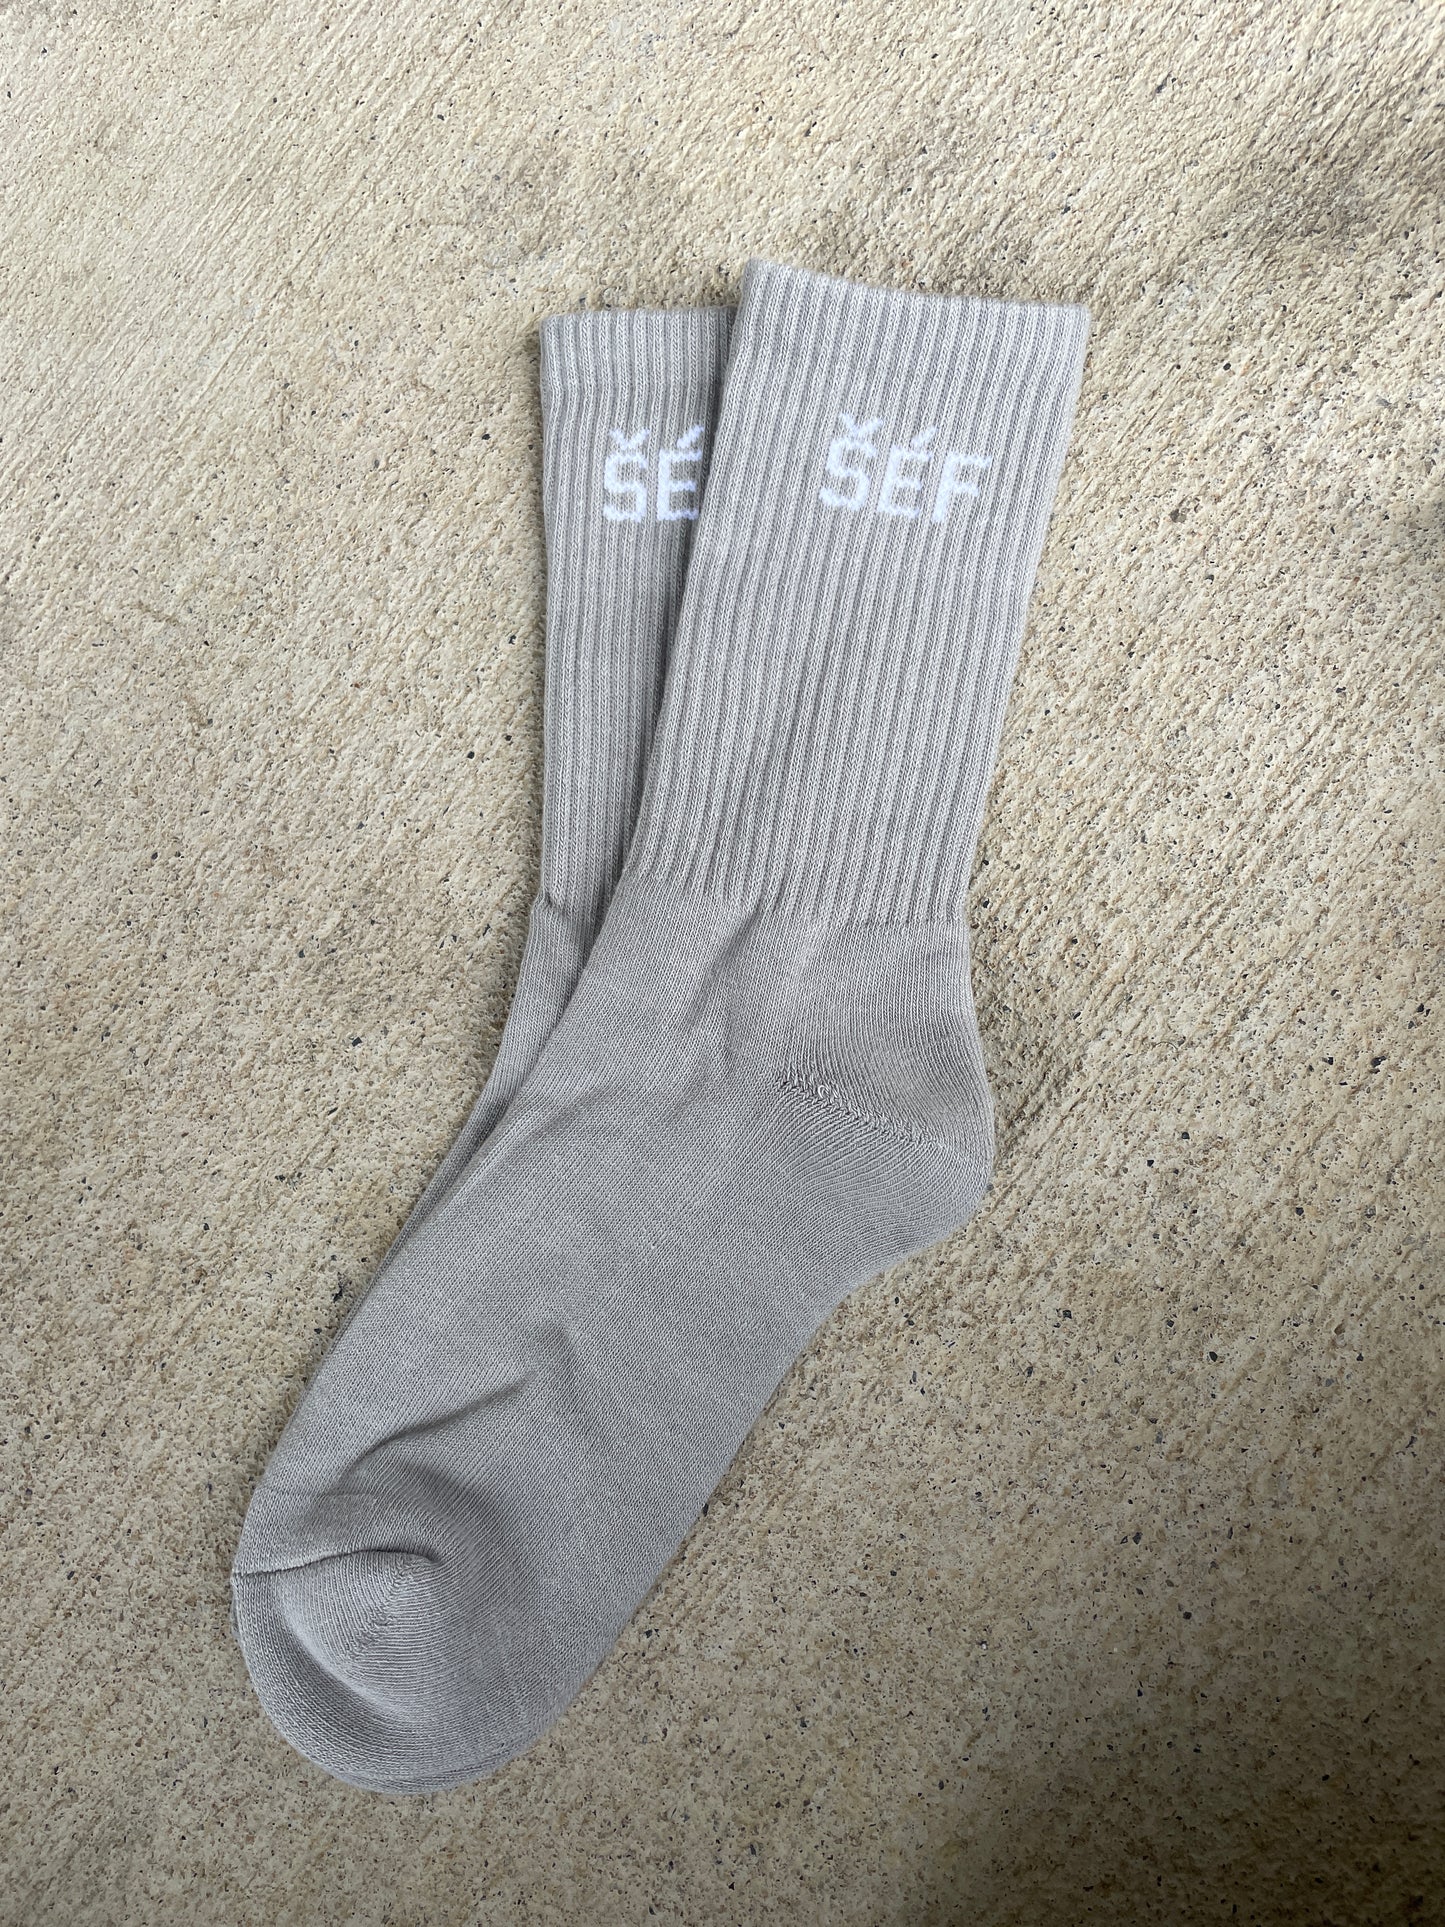 Men's Sole Socks | Best Cotton Socks | thesefbrand.com